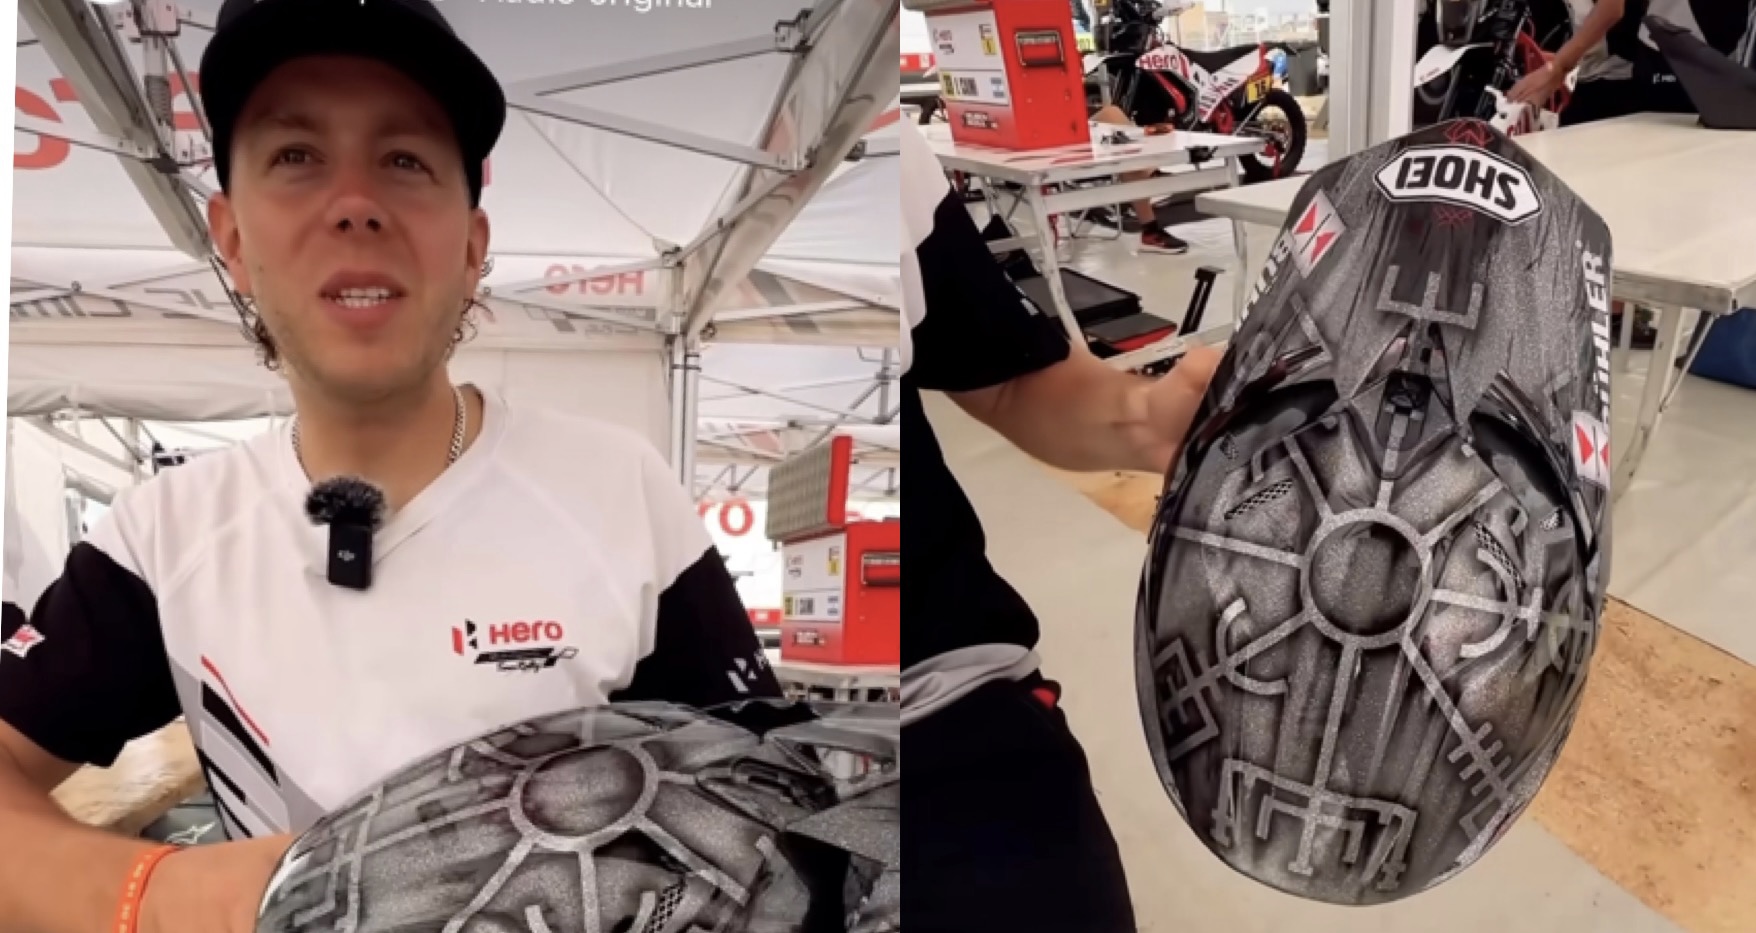 Vídeo Dakar: O que significa o símbolo ”Viking” no capacete de Sebastian Bühler? thumbnail